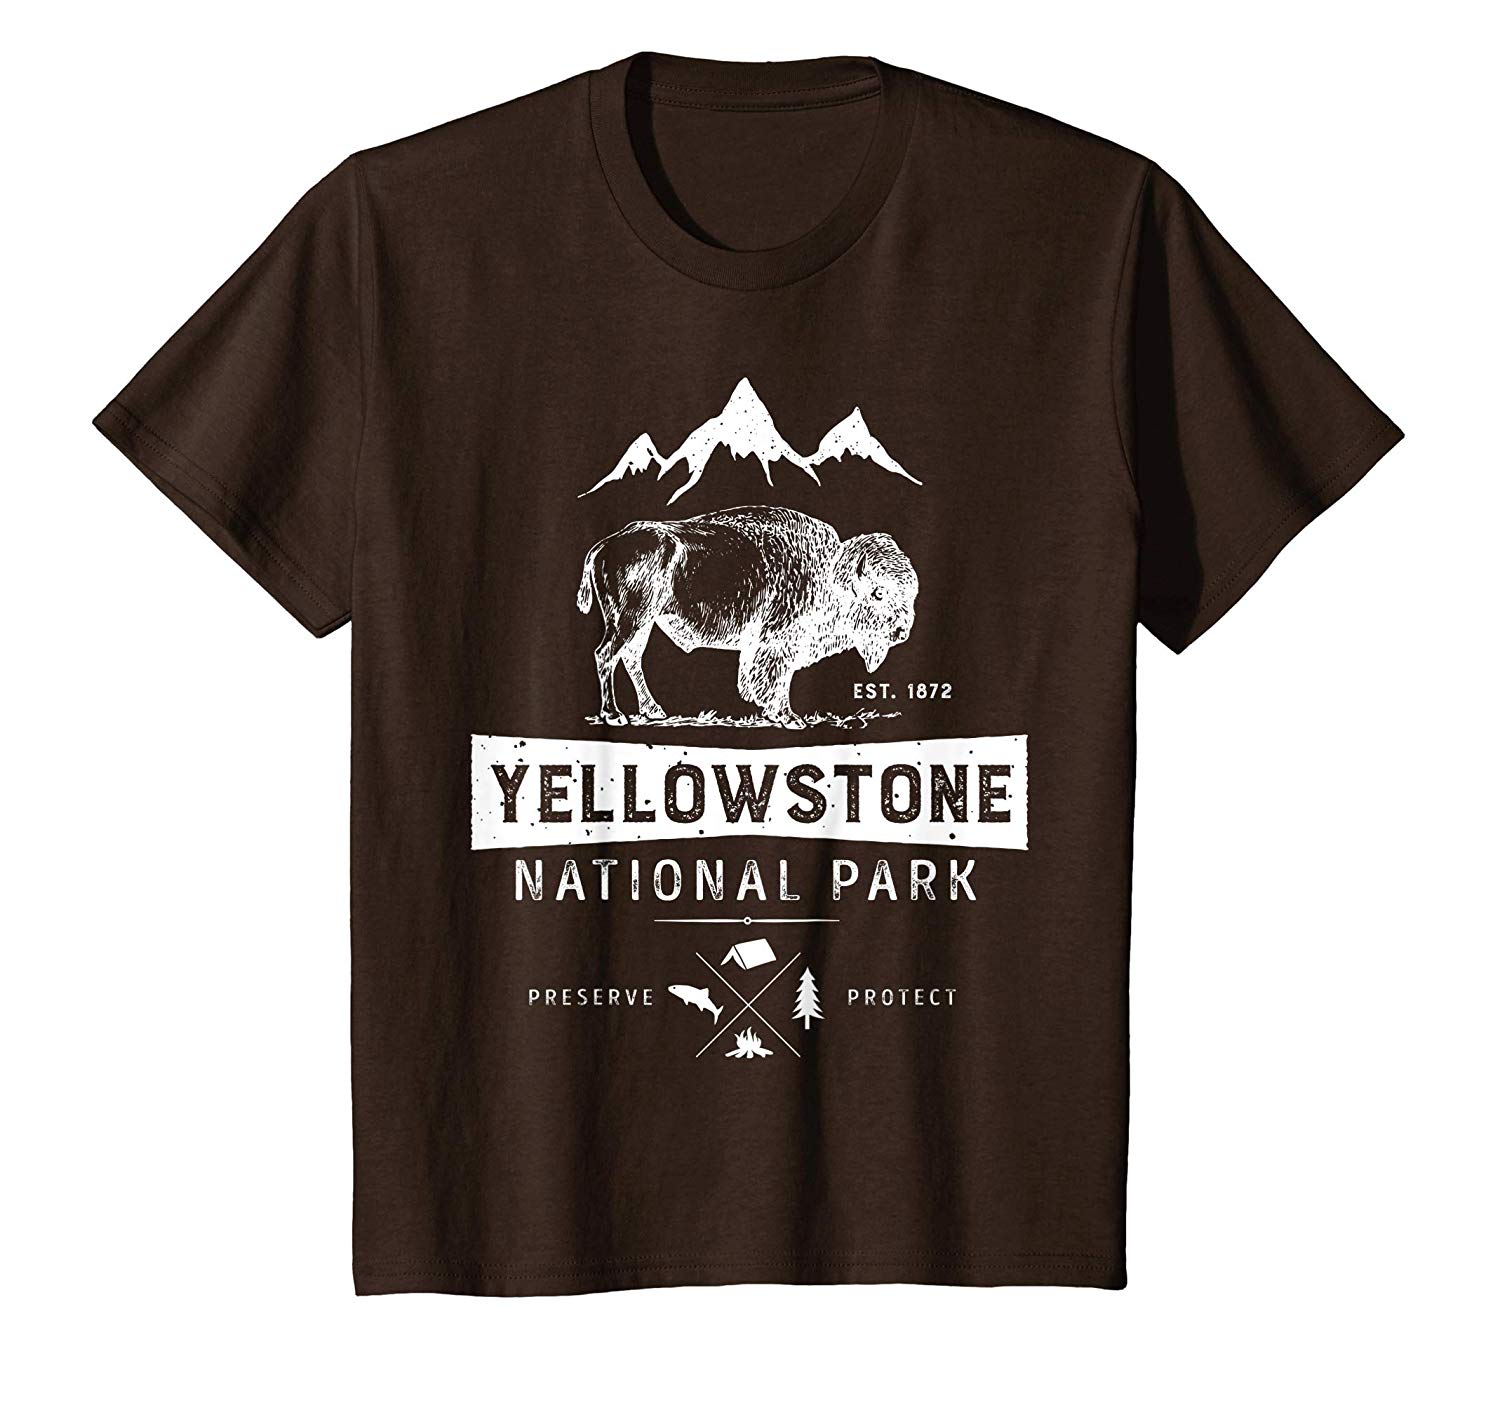 Yellowstone Logo - Amazon.com: Yellowstone National Park T shirt US Bison Buffalo ...